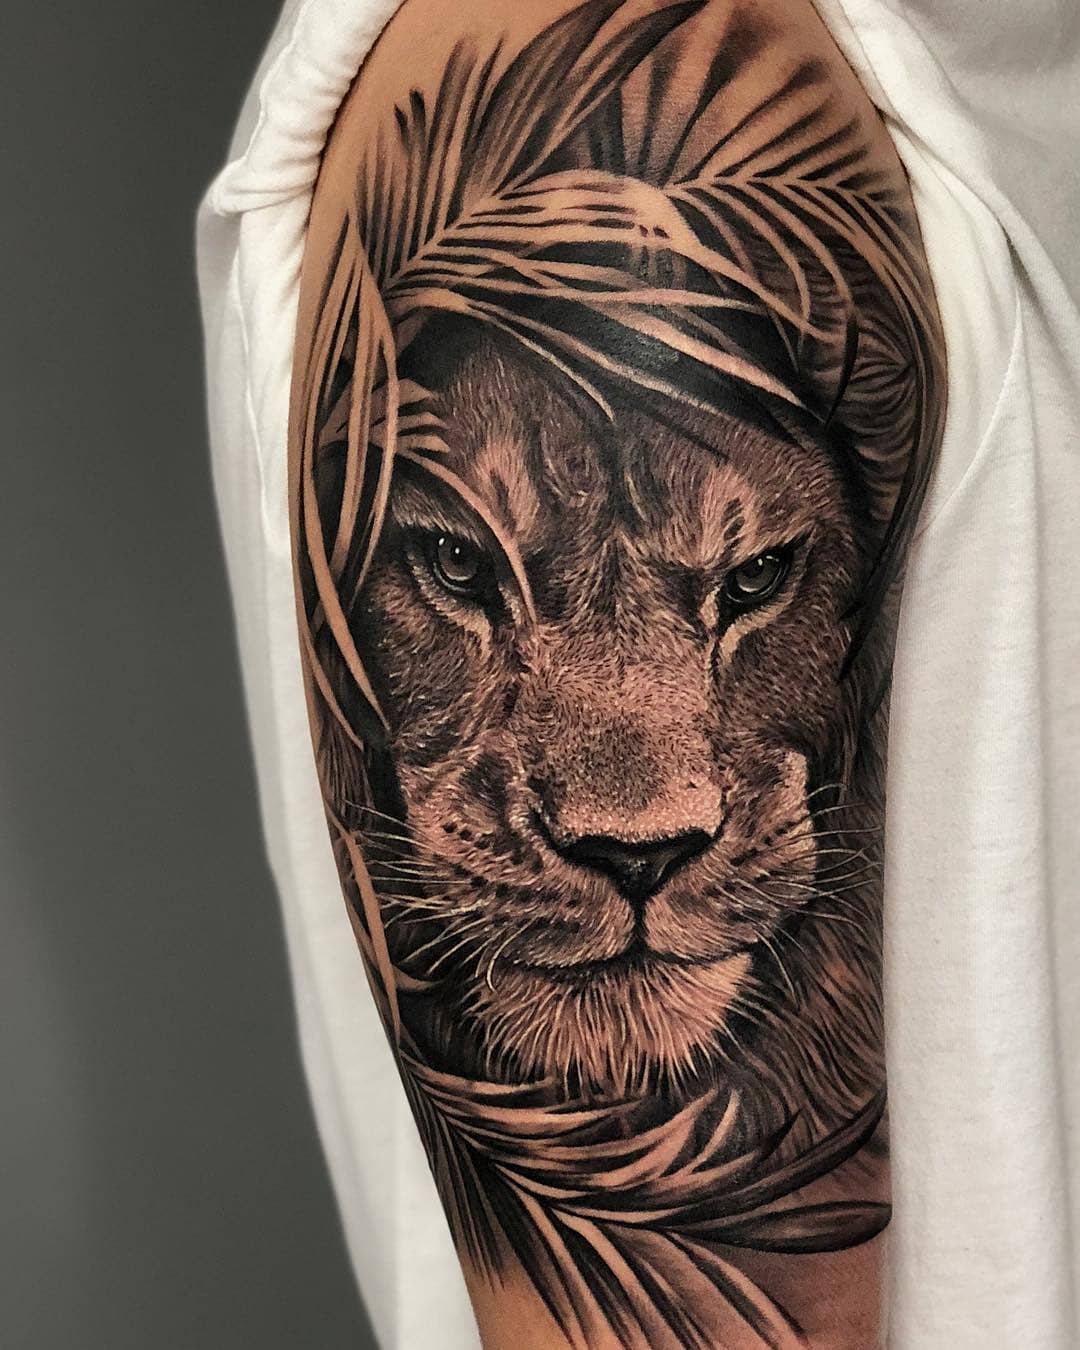 Татуировка Льва в Листьях в Стиле Реализм